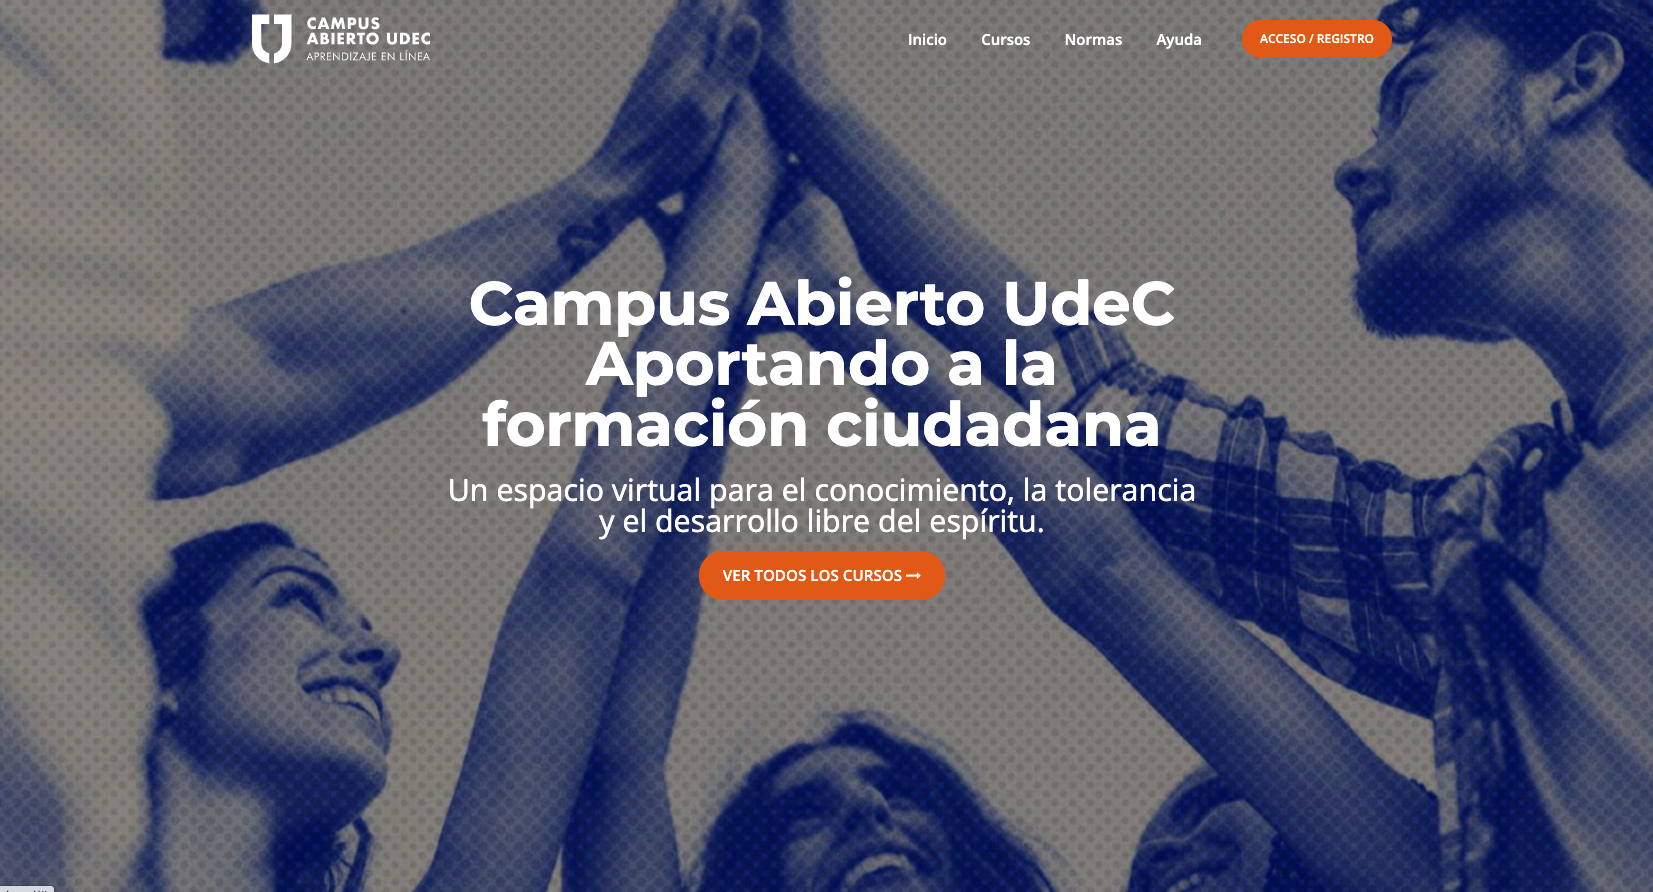 Campus Abierto UdeC habilita cursos gratuitos en Educación y SARS-CoV-2